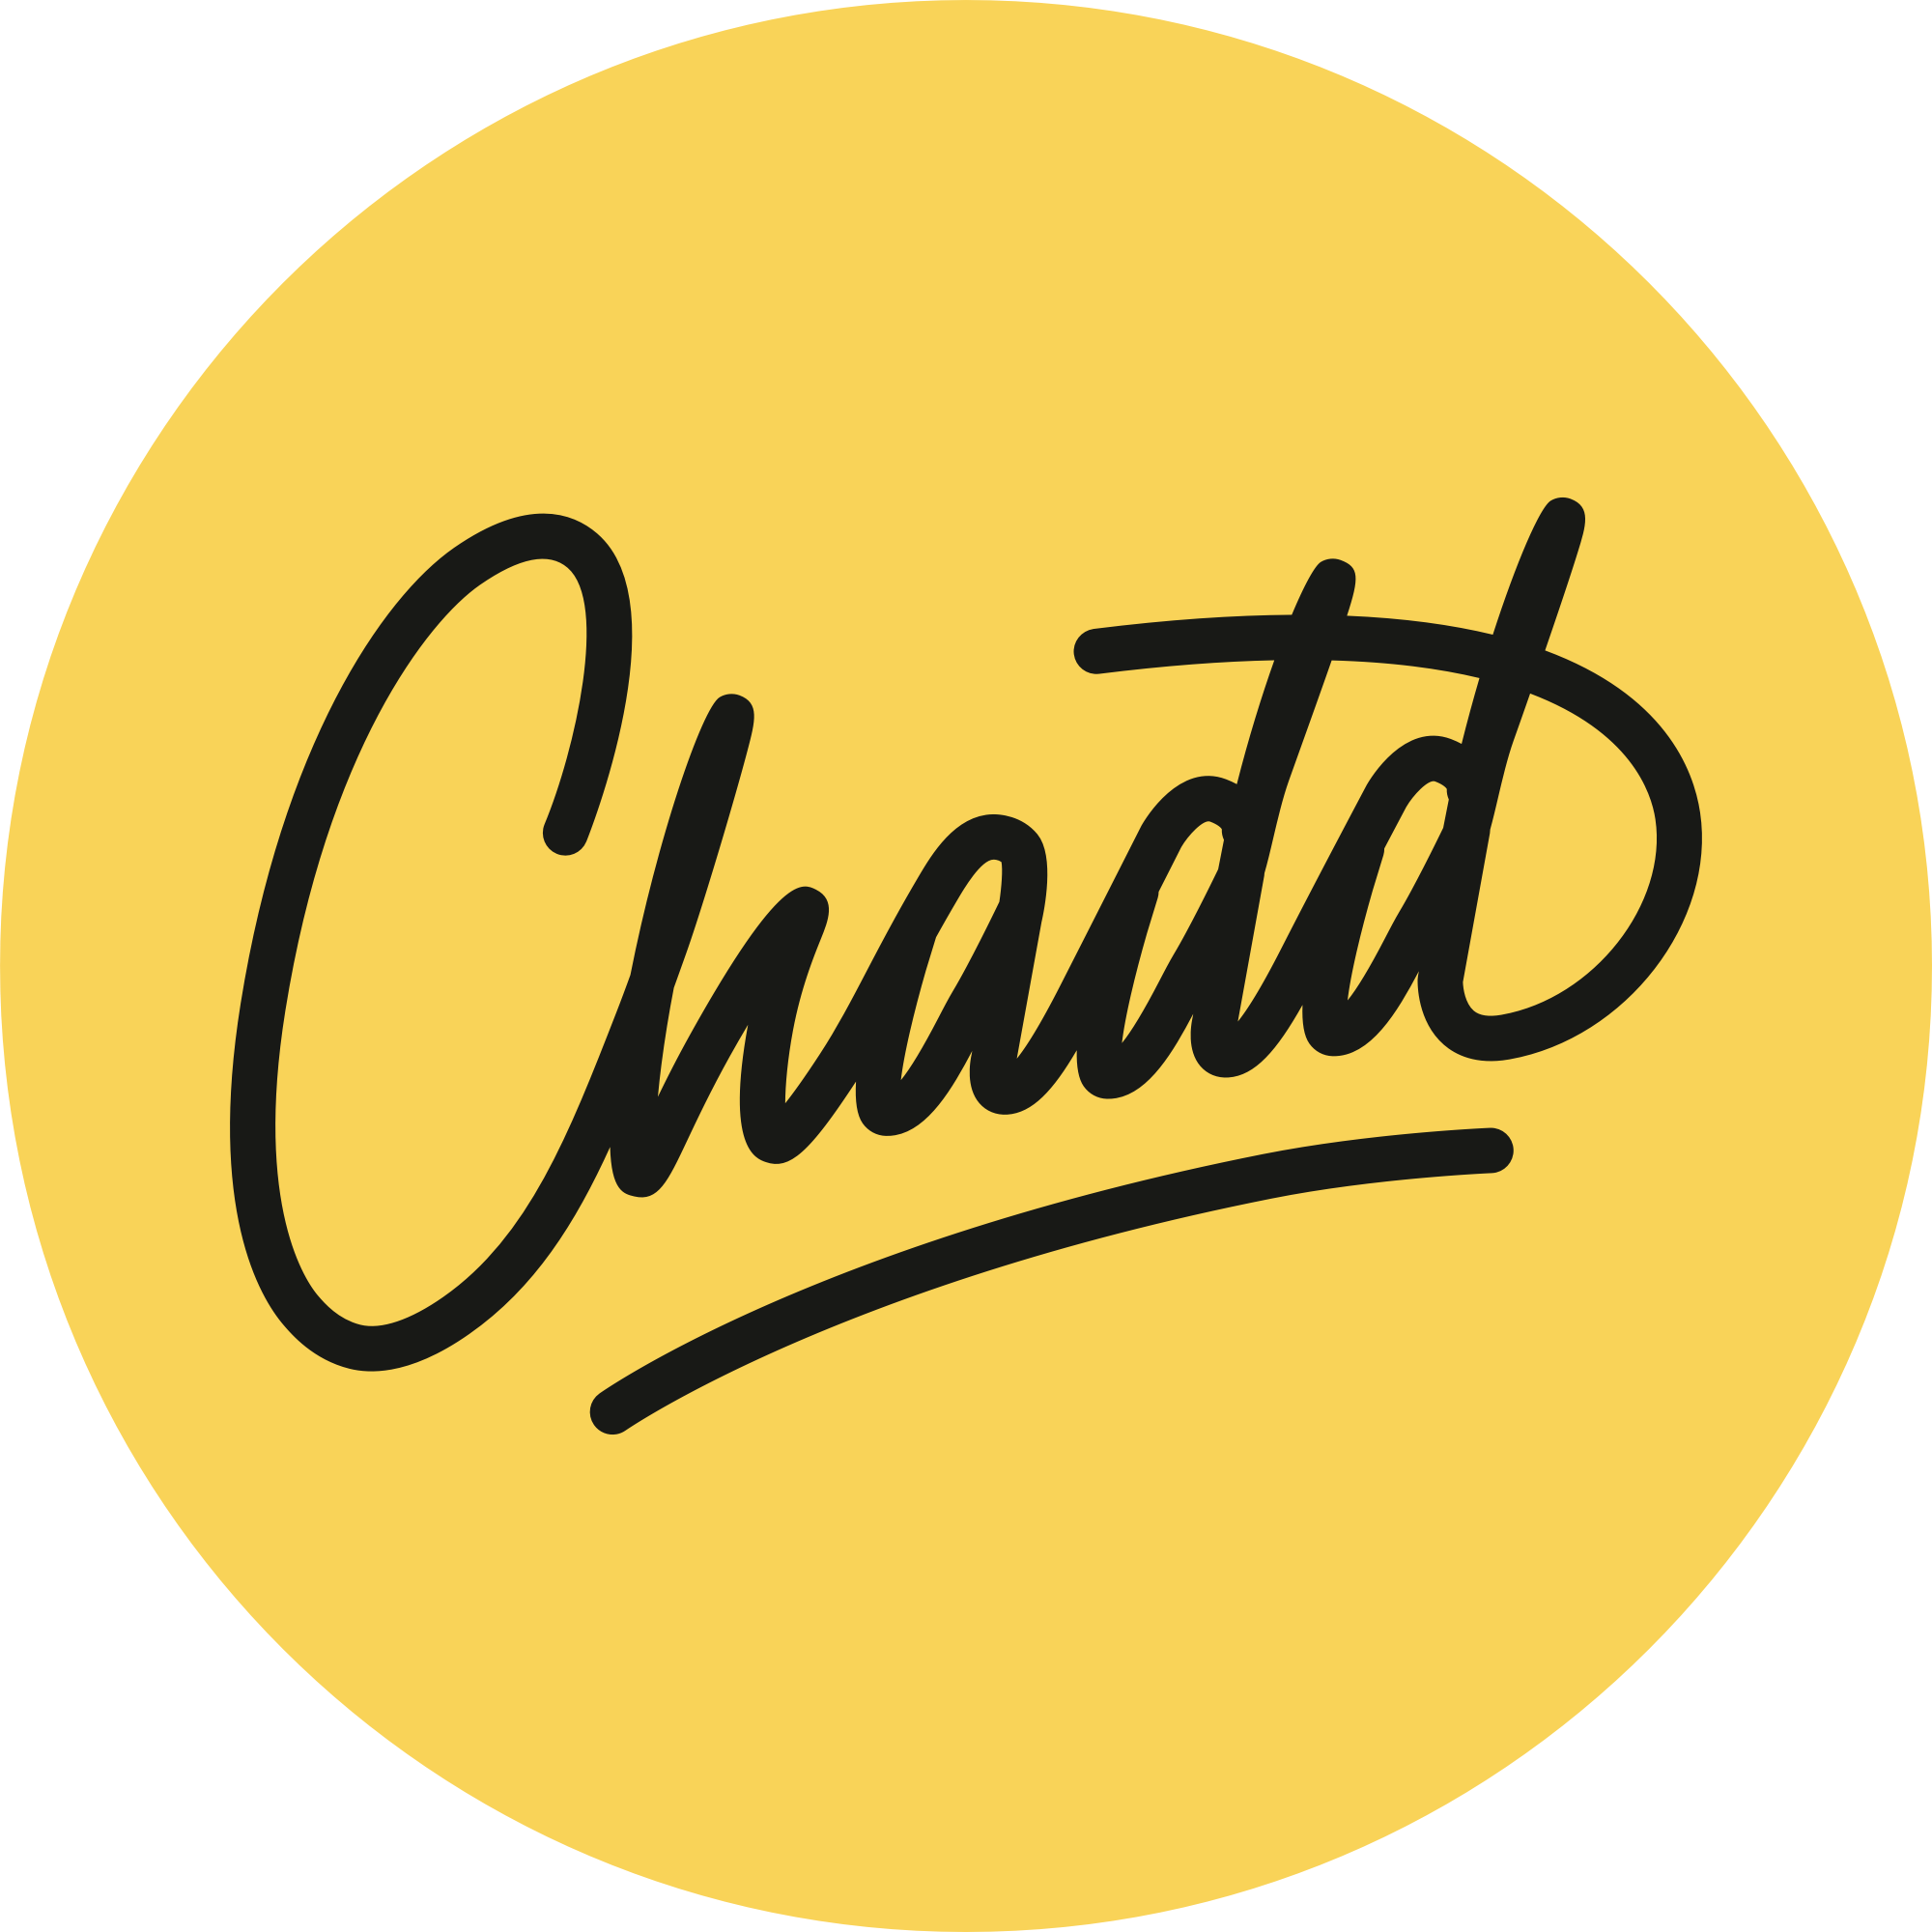 Logo Mr. Chadd